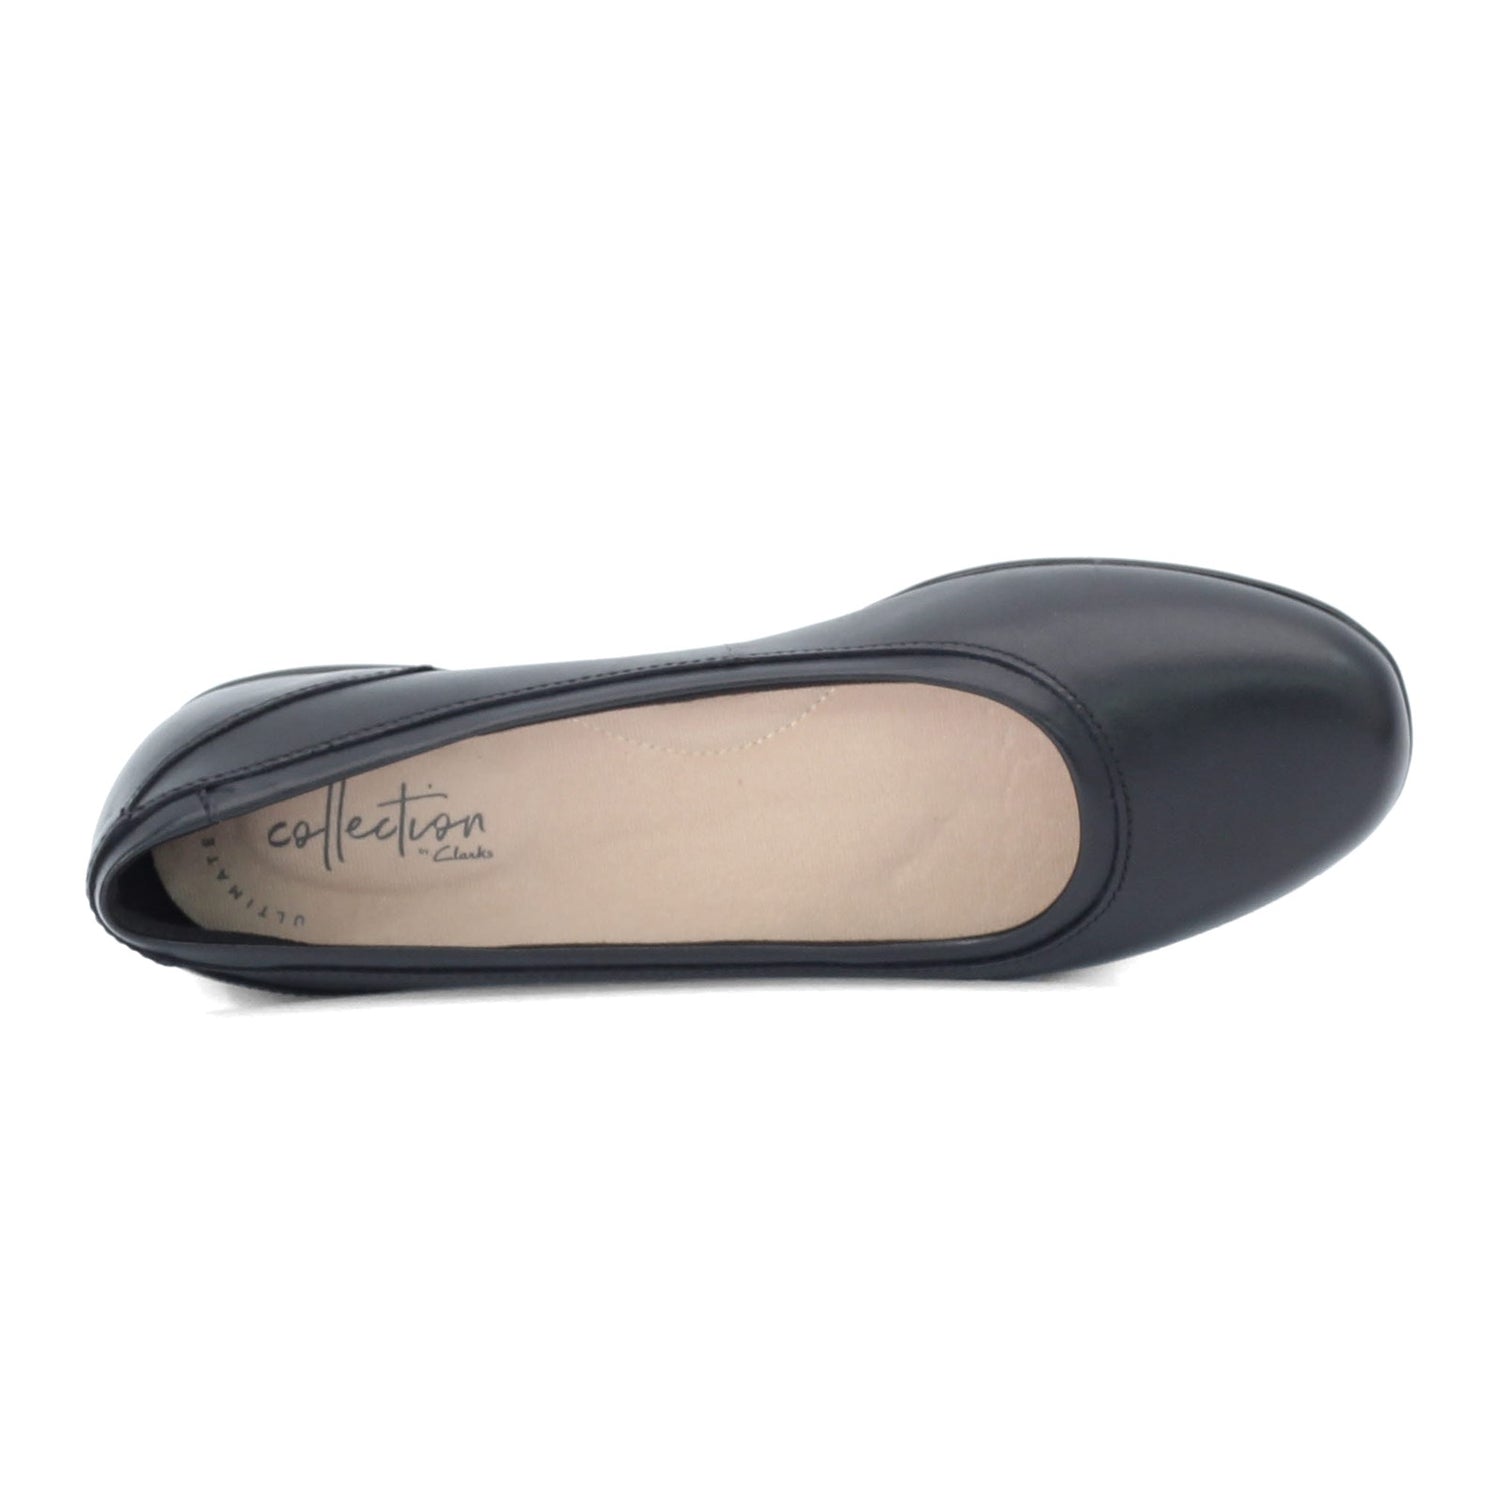 Peltz Shoes  Women's Clarks Gracelin Mara Flat BLACK 26128605